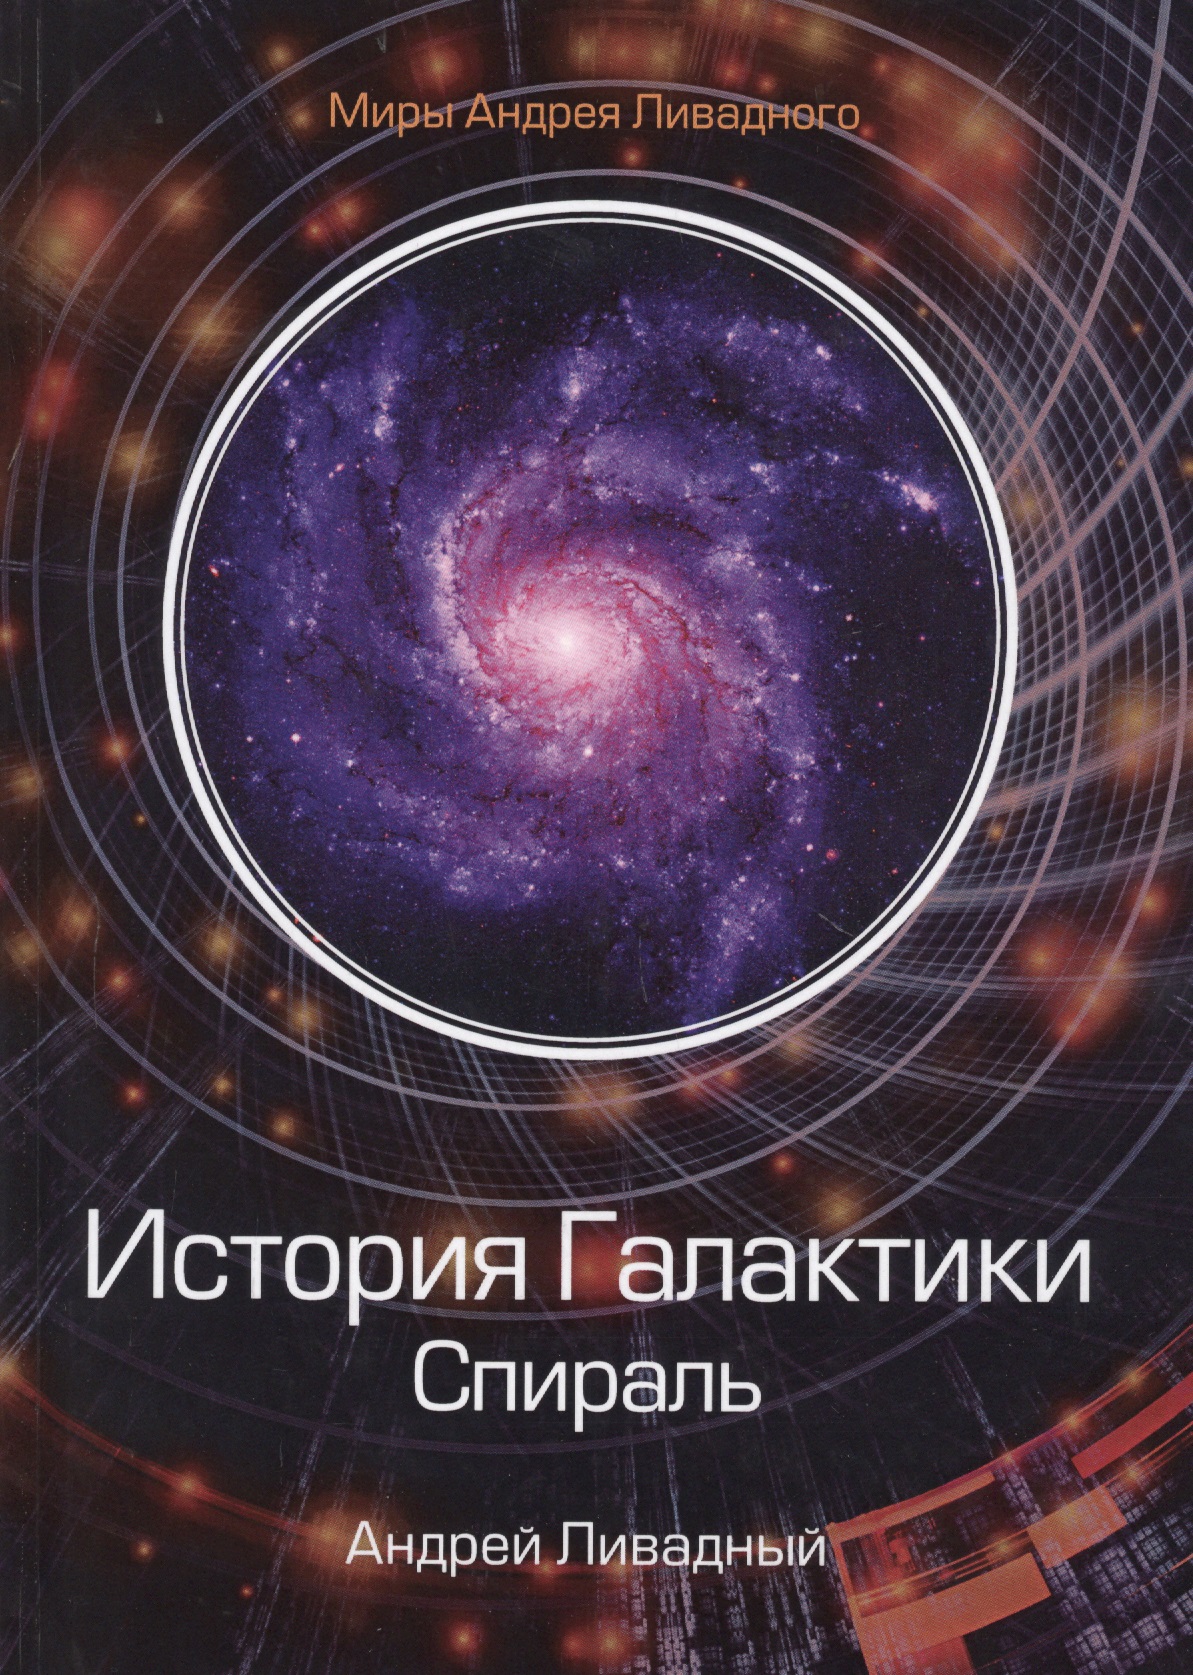 Ливадный Андрей Львович - История Галактики. Спираль